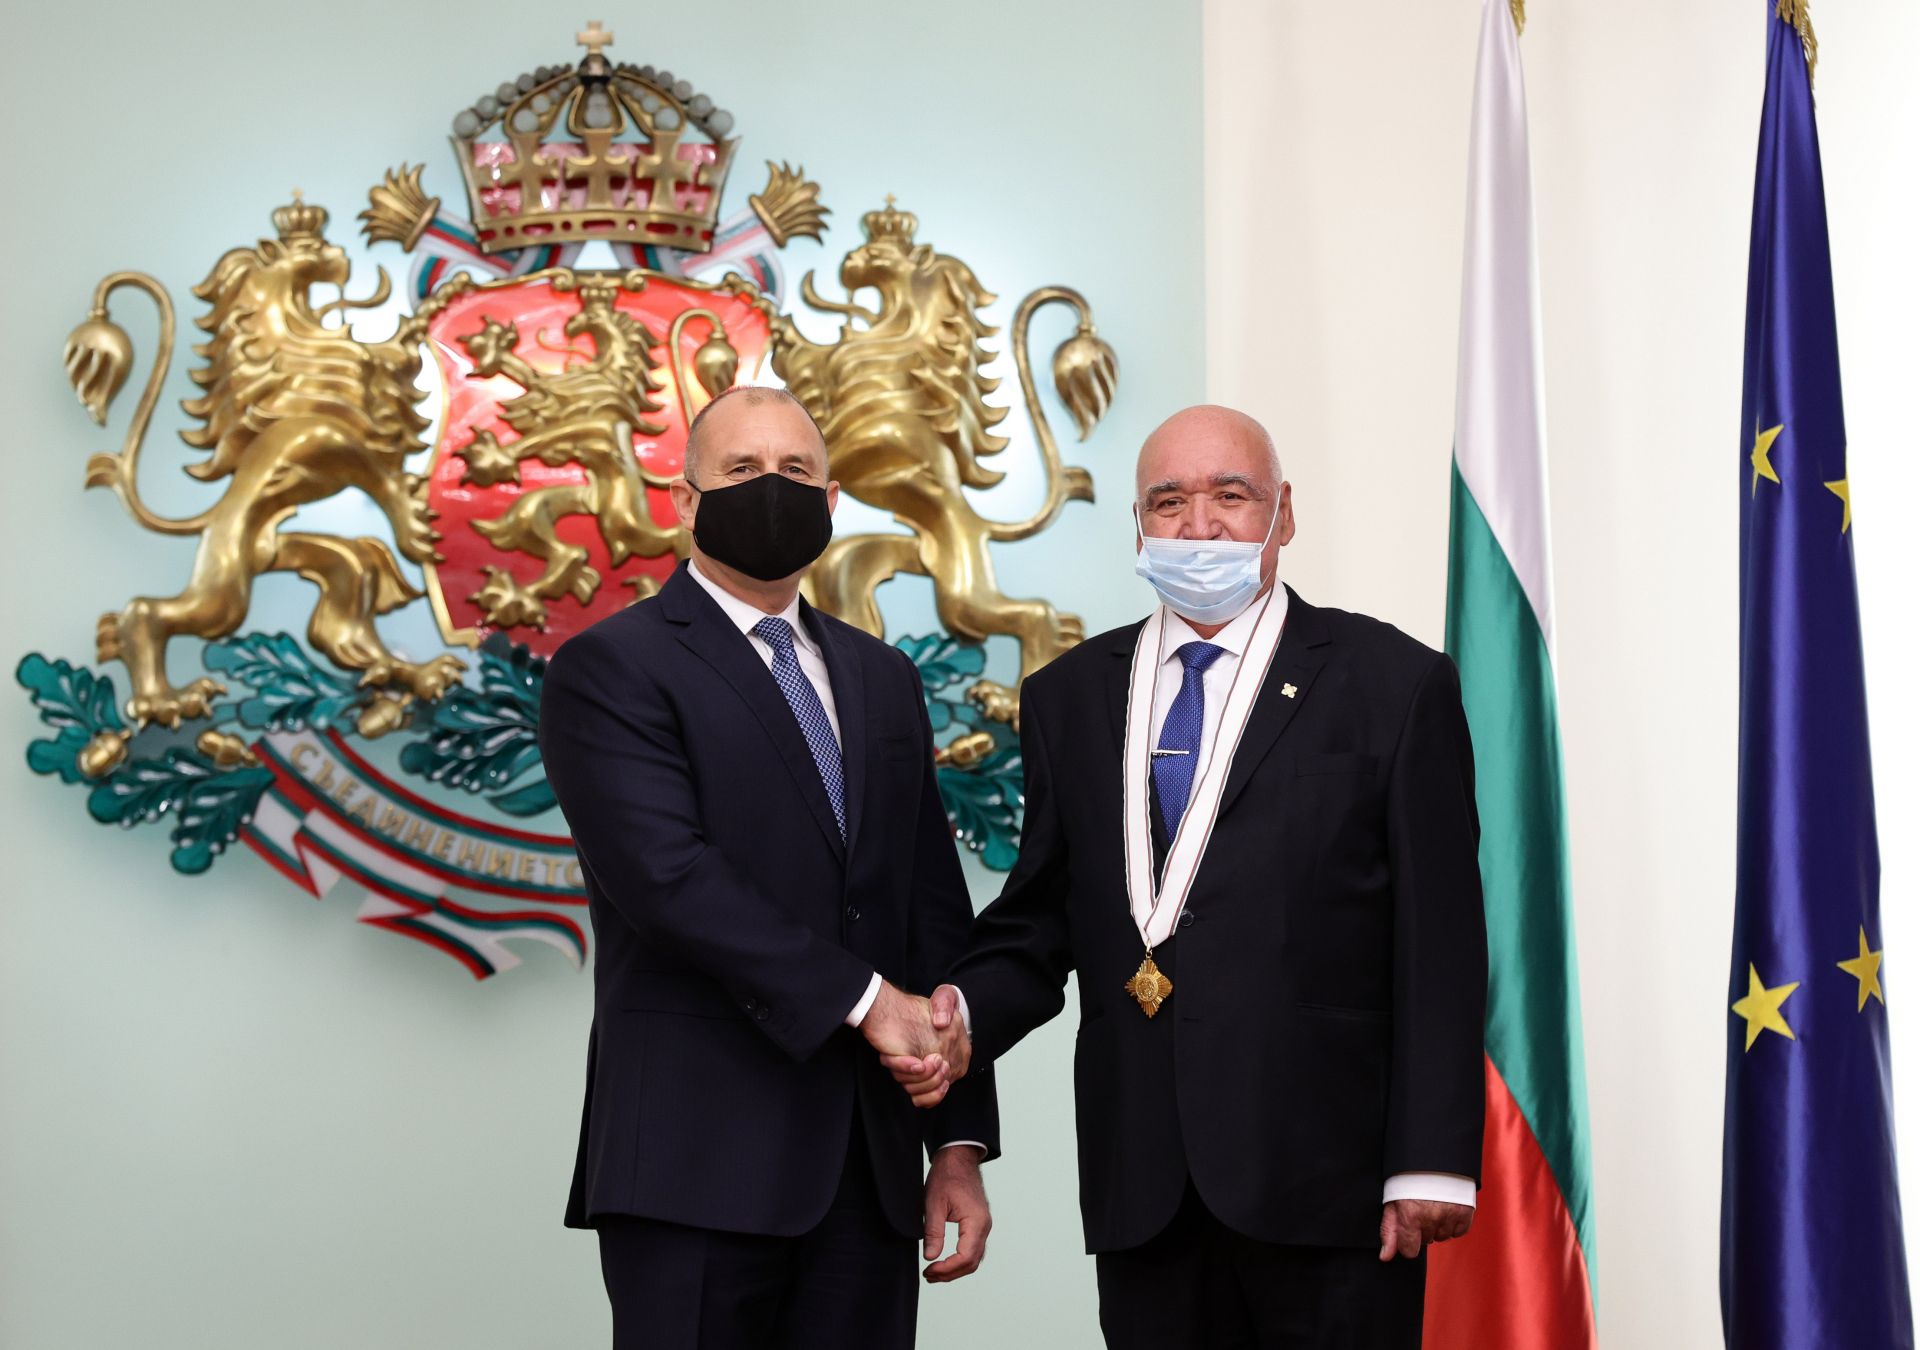 Държавният глава отличи проф. д-р Камен Плочев(дясно) с орден "Мадарски конник"